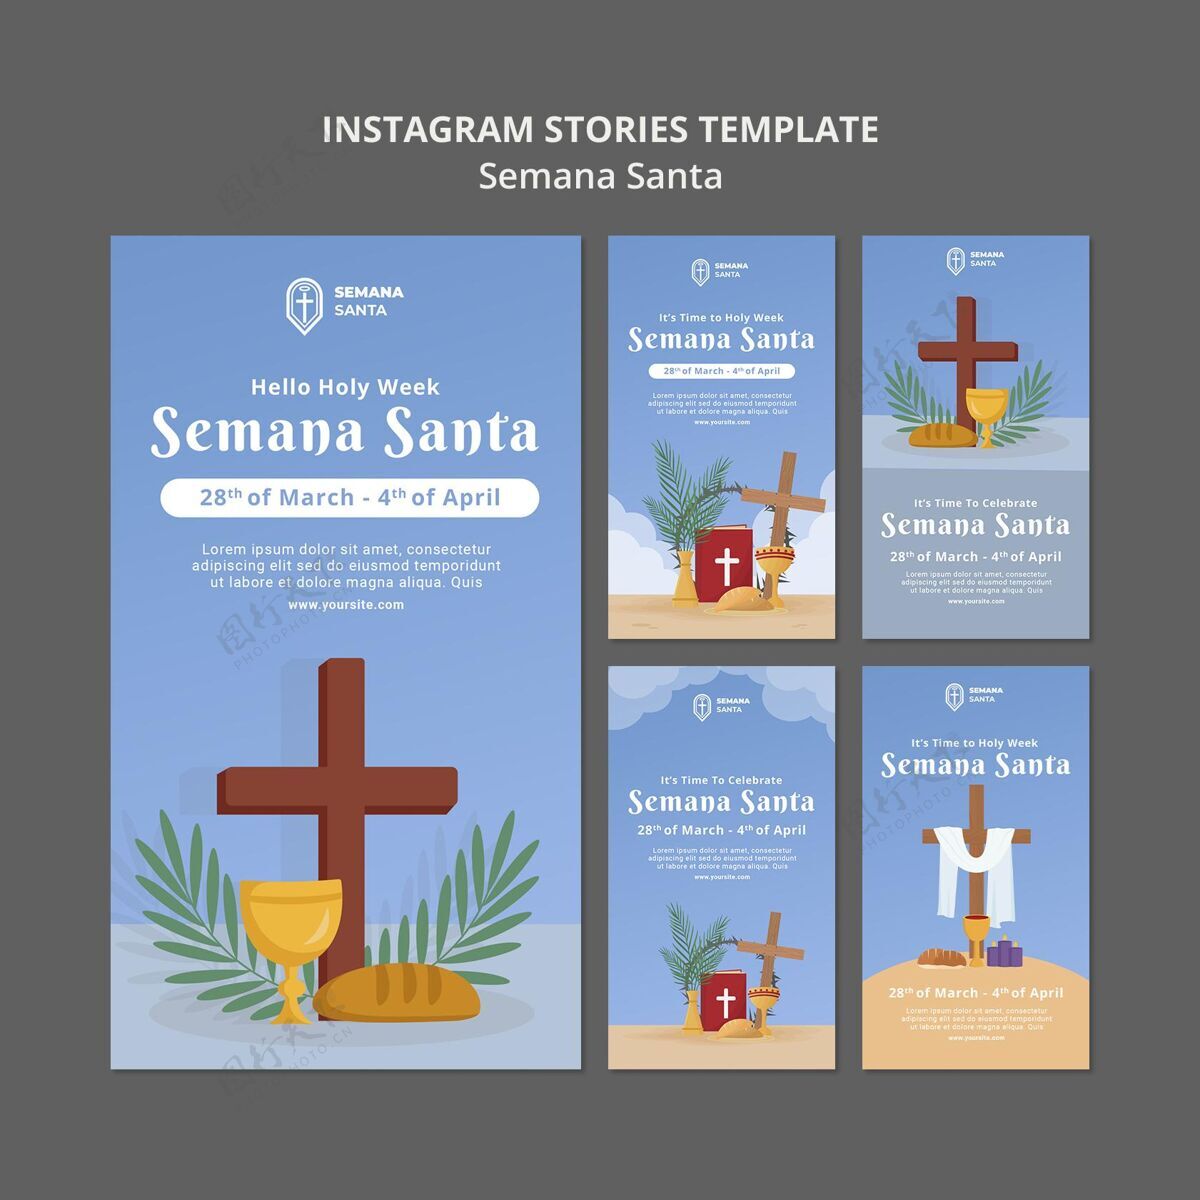 传统Semanasanta社交媒体故事集宗教神圣周社交媒体